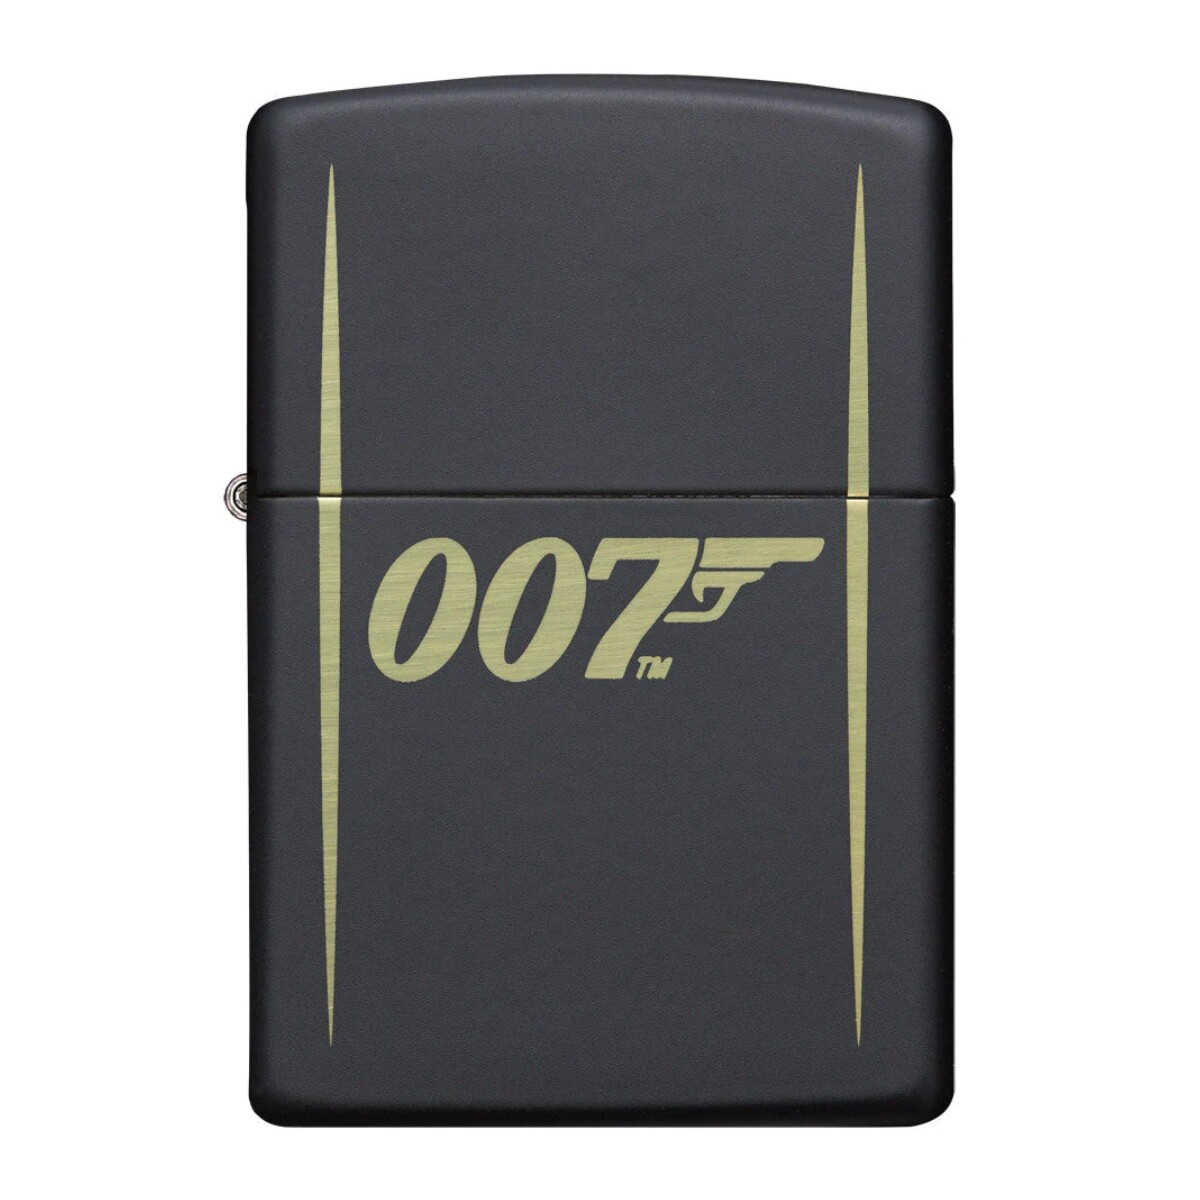 Encendedor Zippo James Bond 007 - 49539 